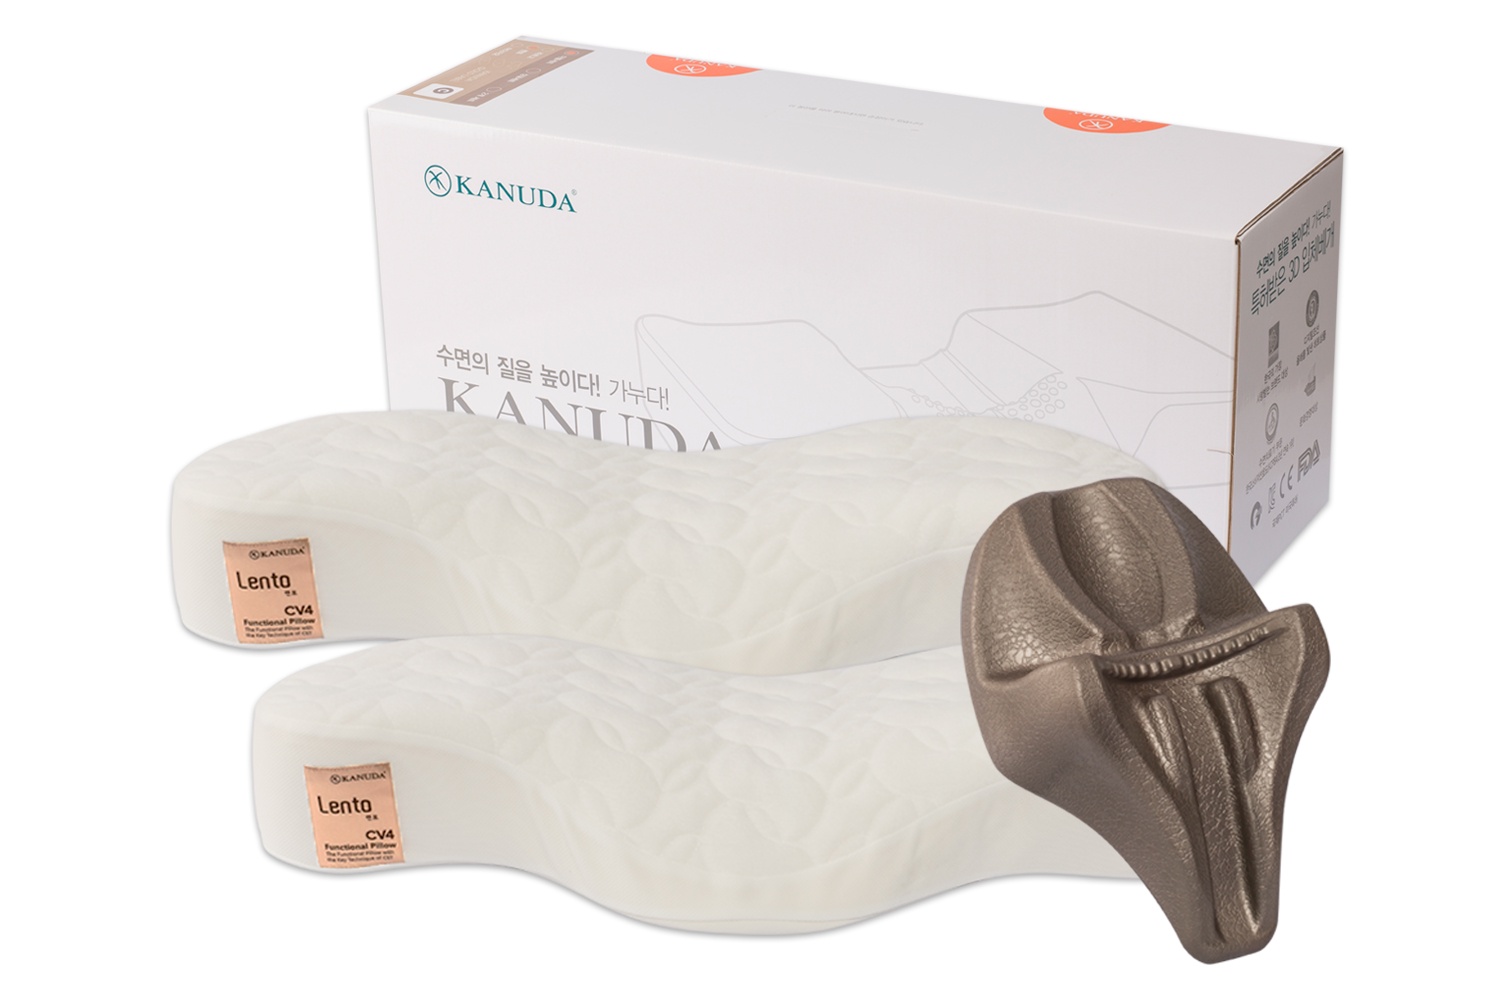 Ортопедическая подушка KANUDA Gold Label Lento, набор 2 подушки + нэп, Корея, белый